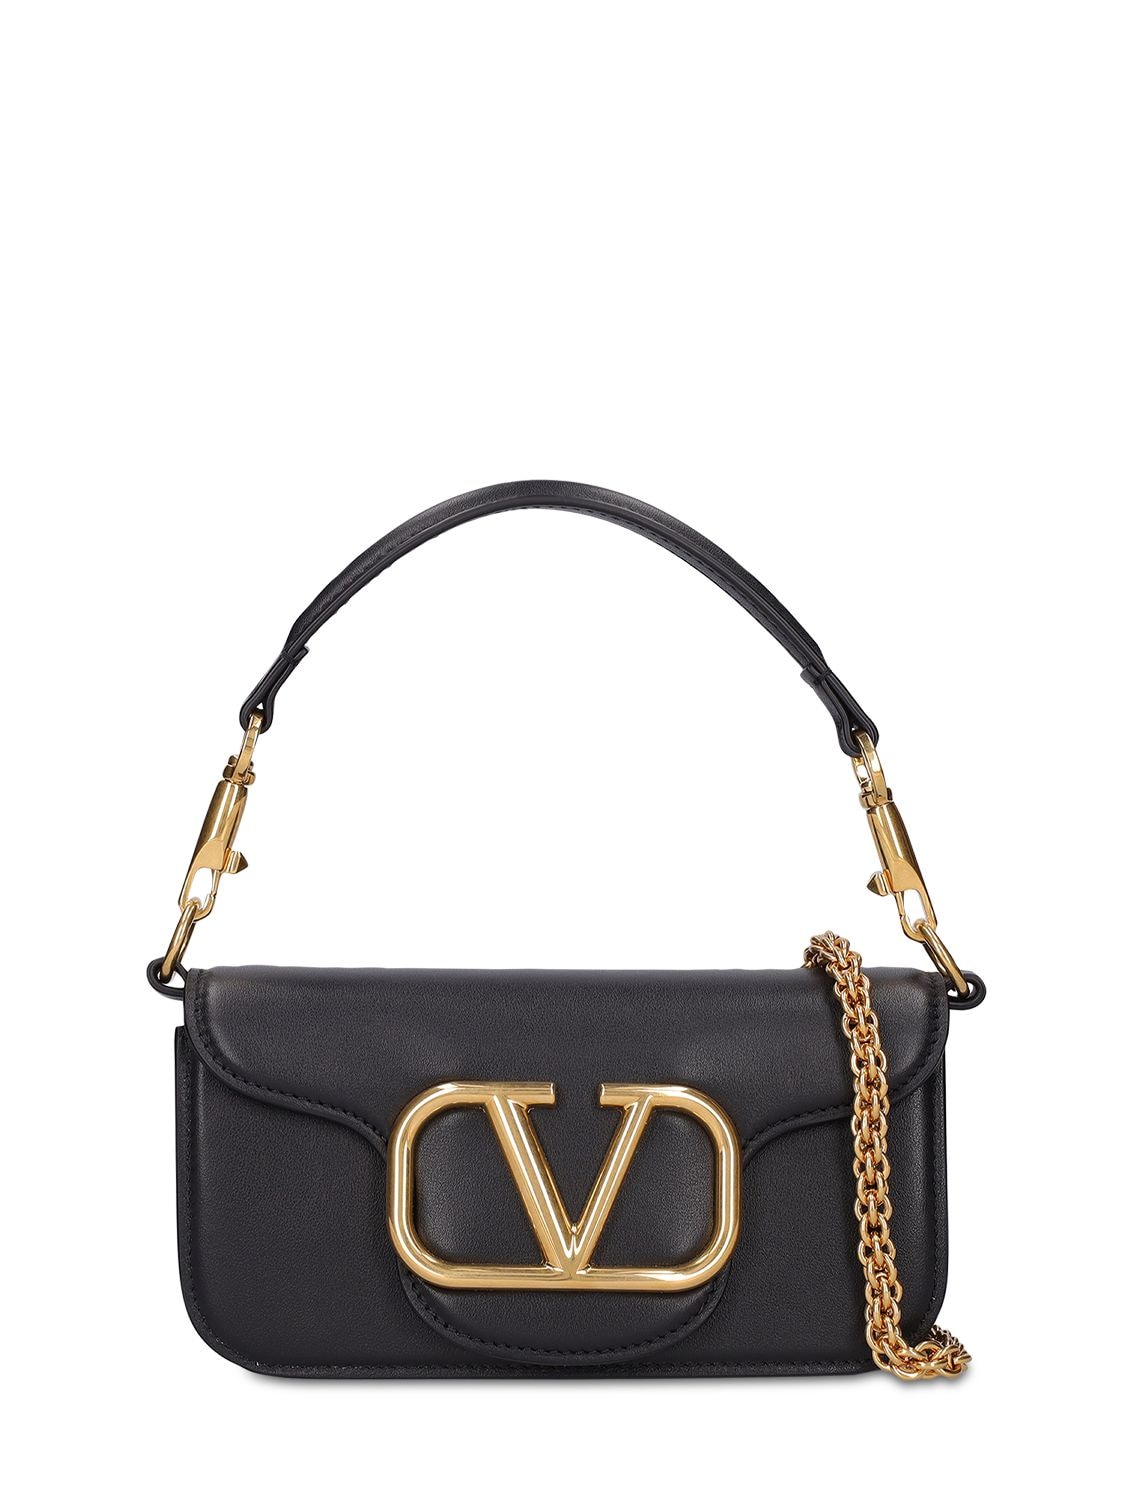 Valentino Garavani Black Small Locò Shoulder Bag With Chain In 0no